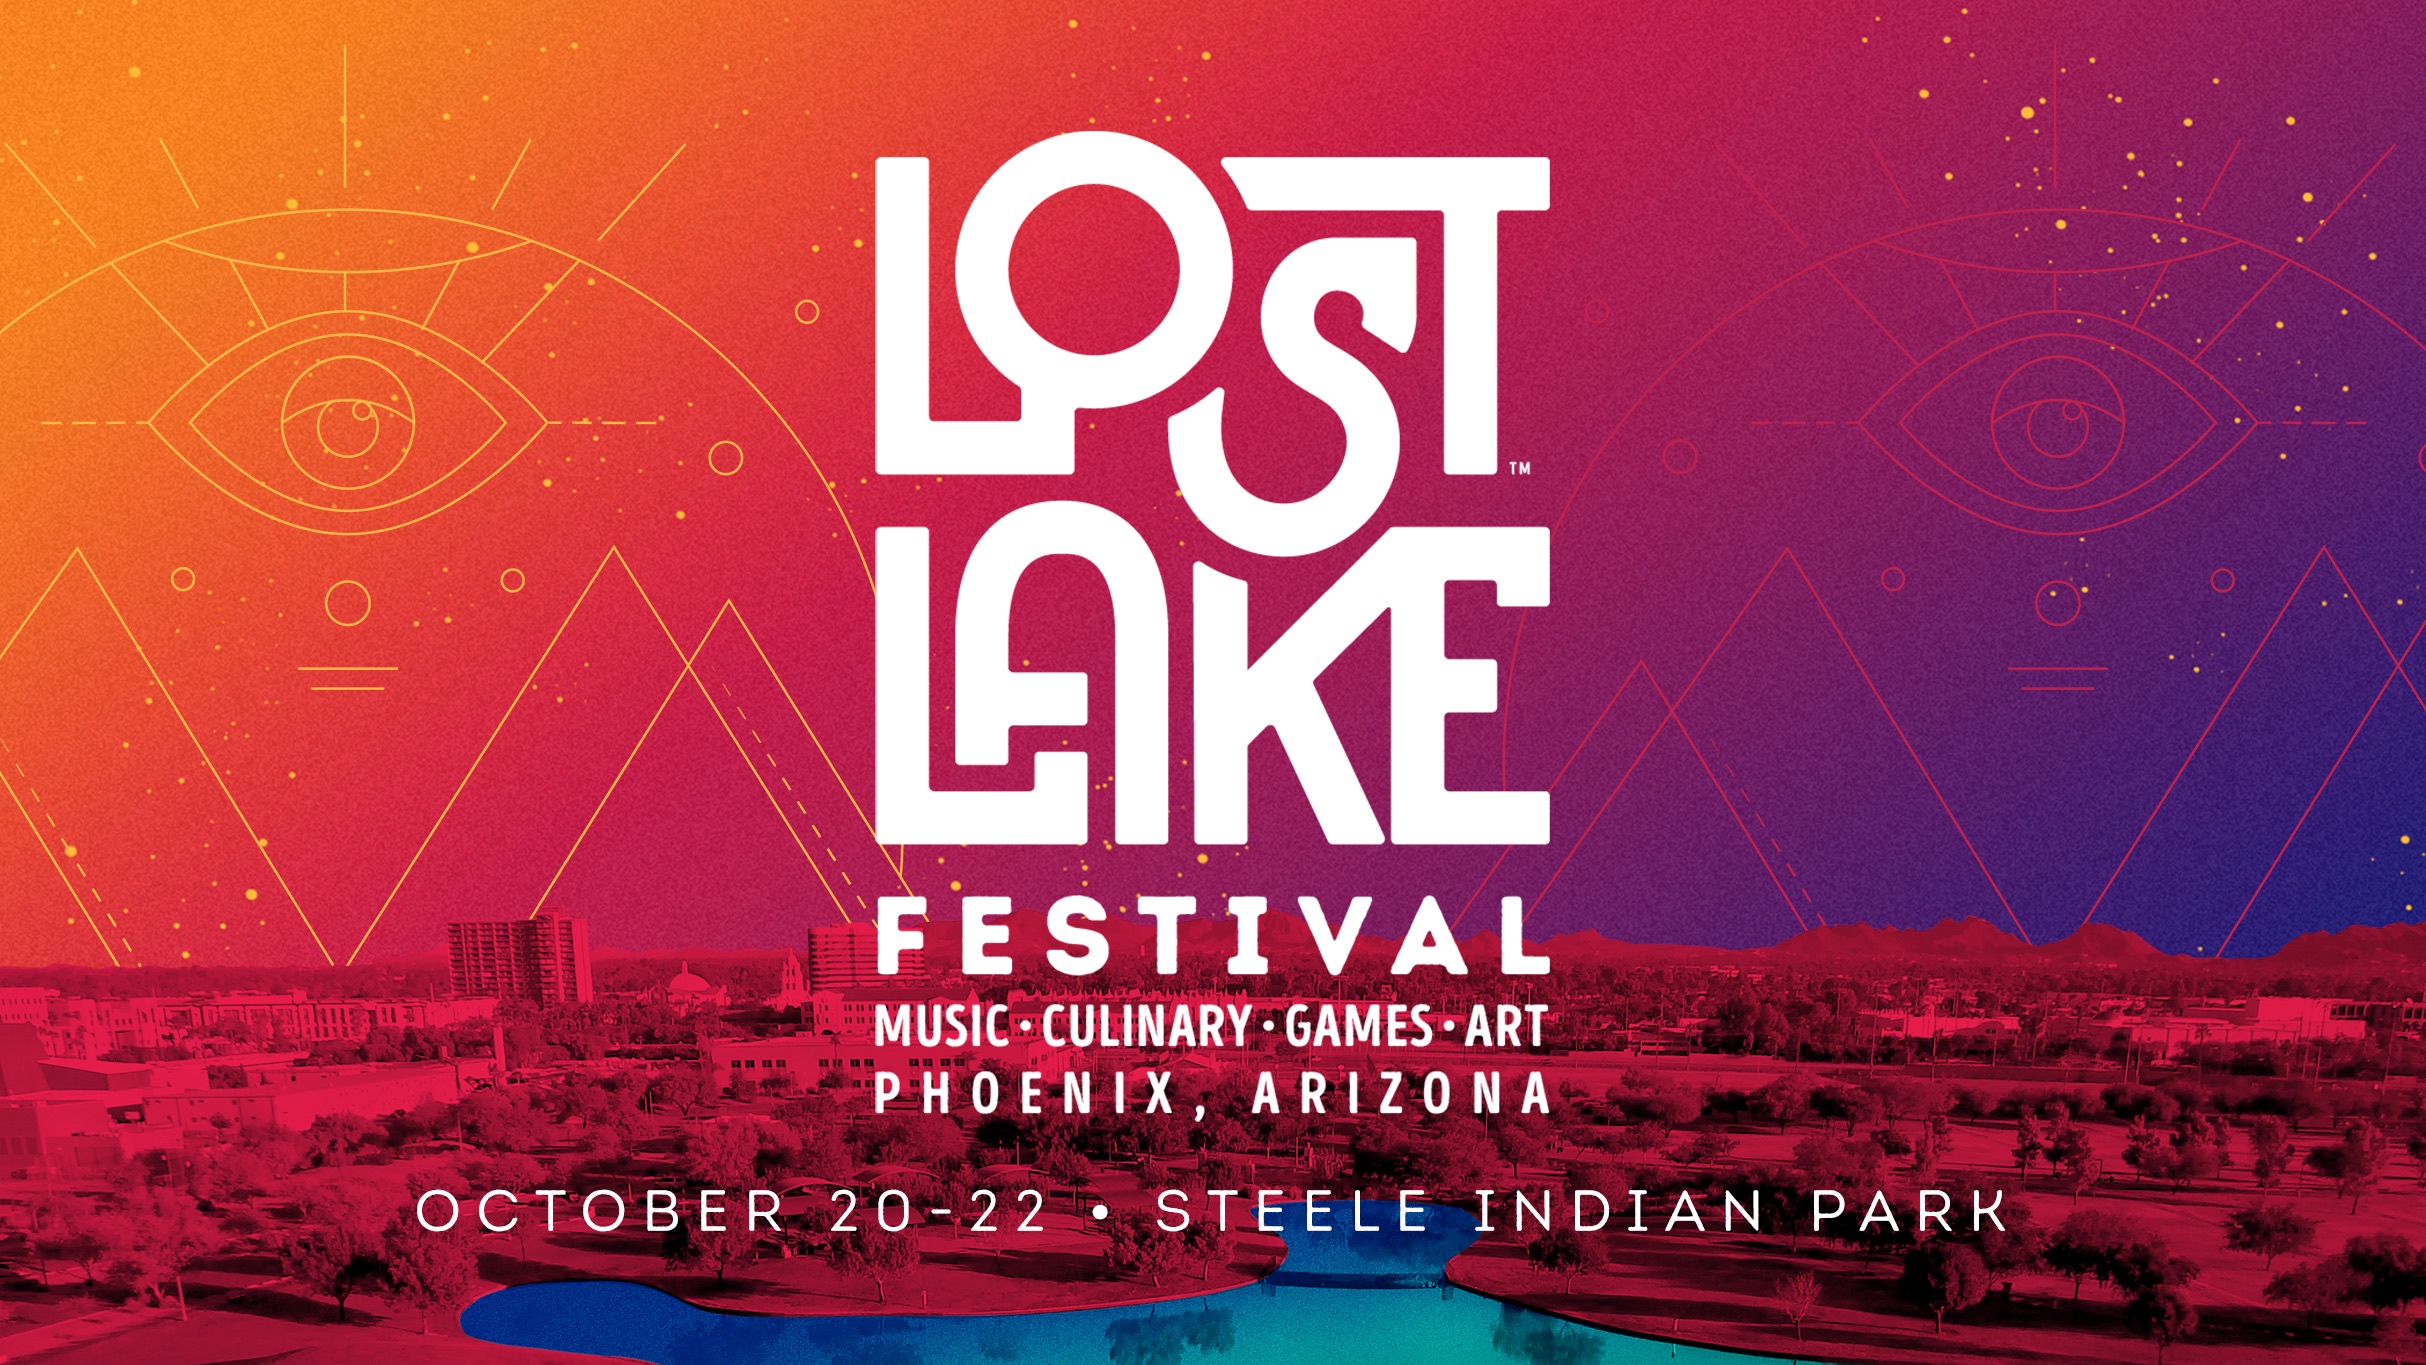 Lost Lake Festival Graphic